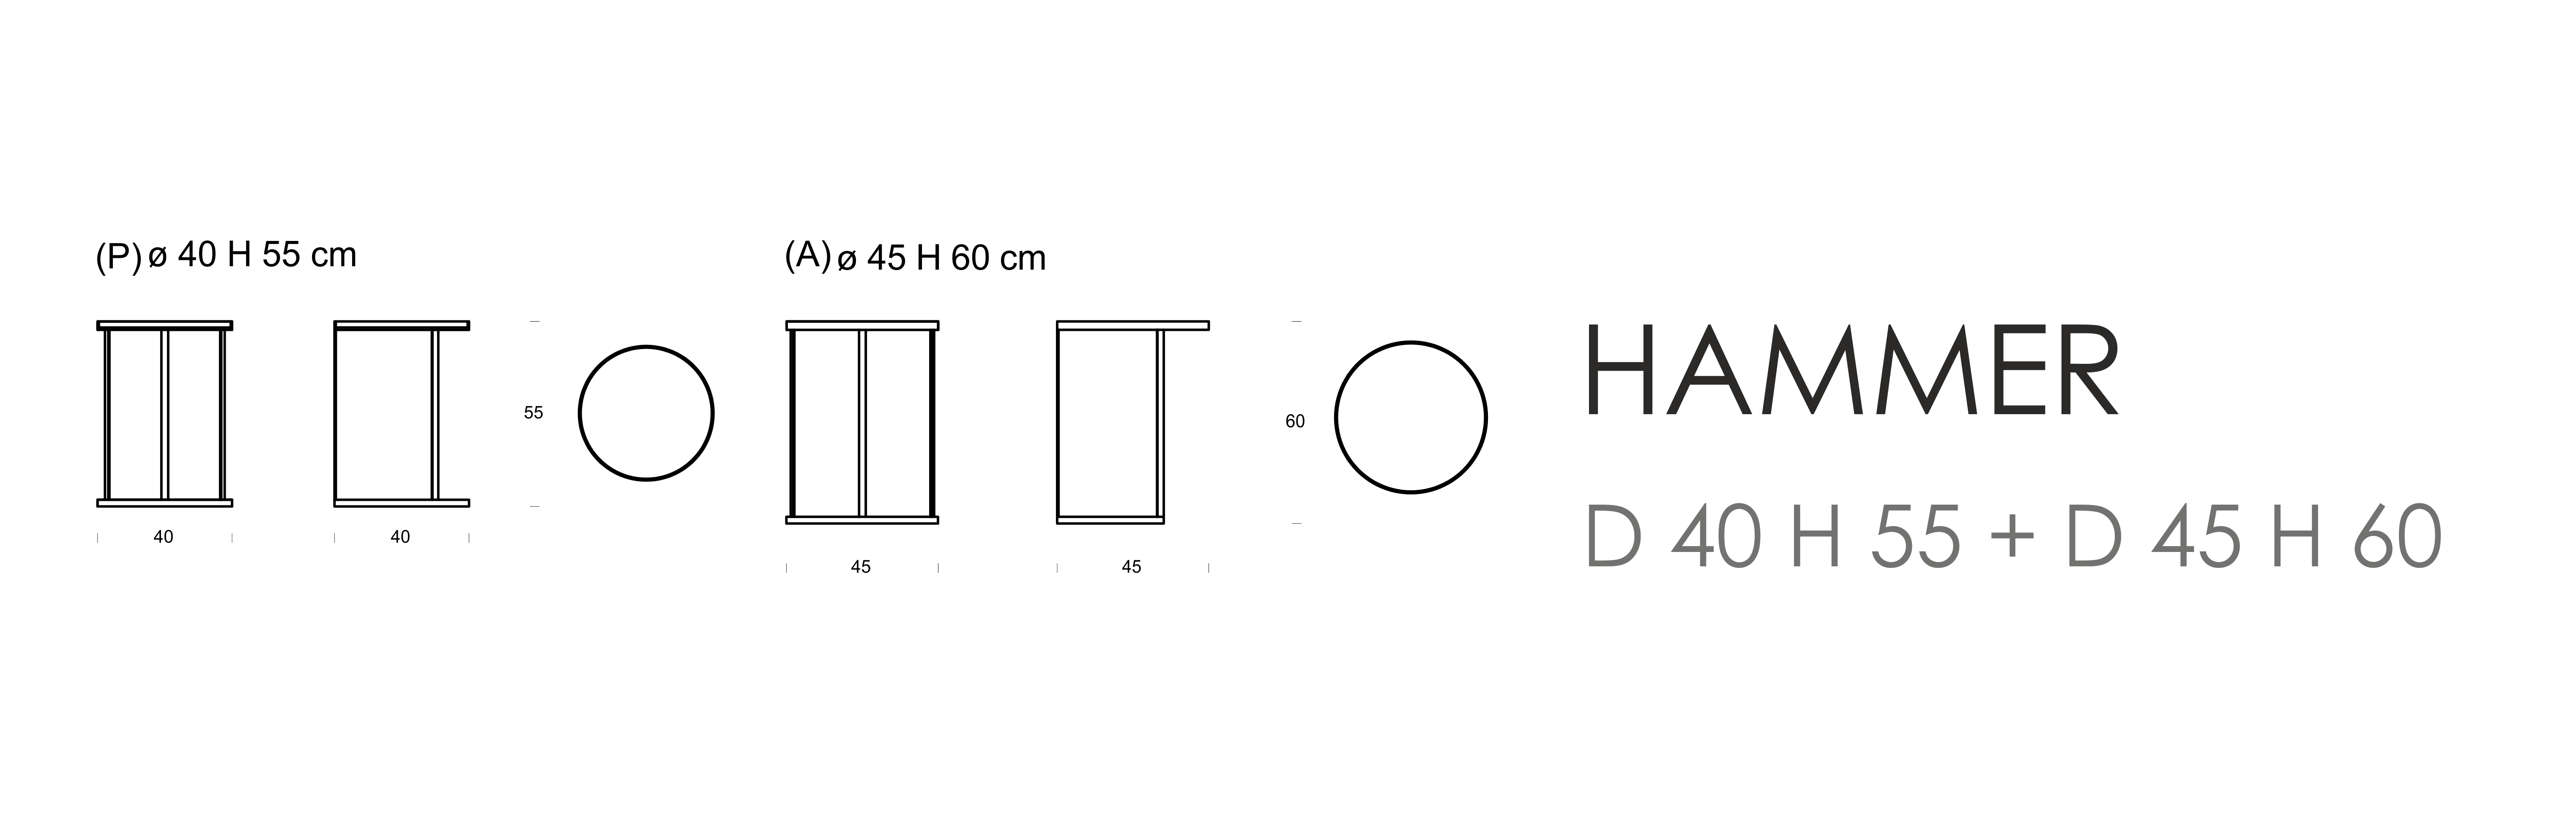 Hammer D 40 H 55 + D 45 H 60